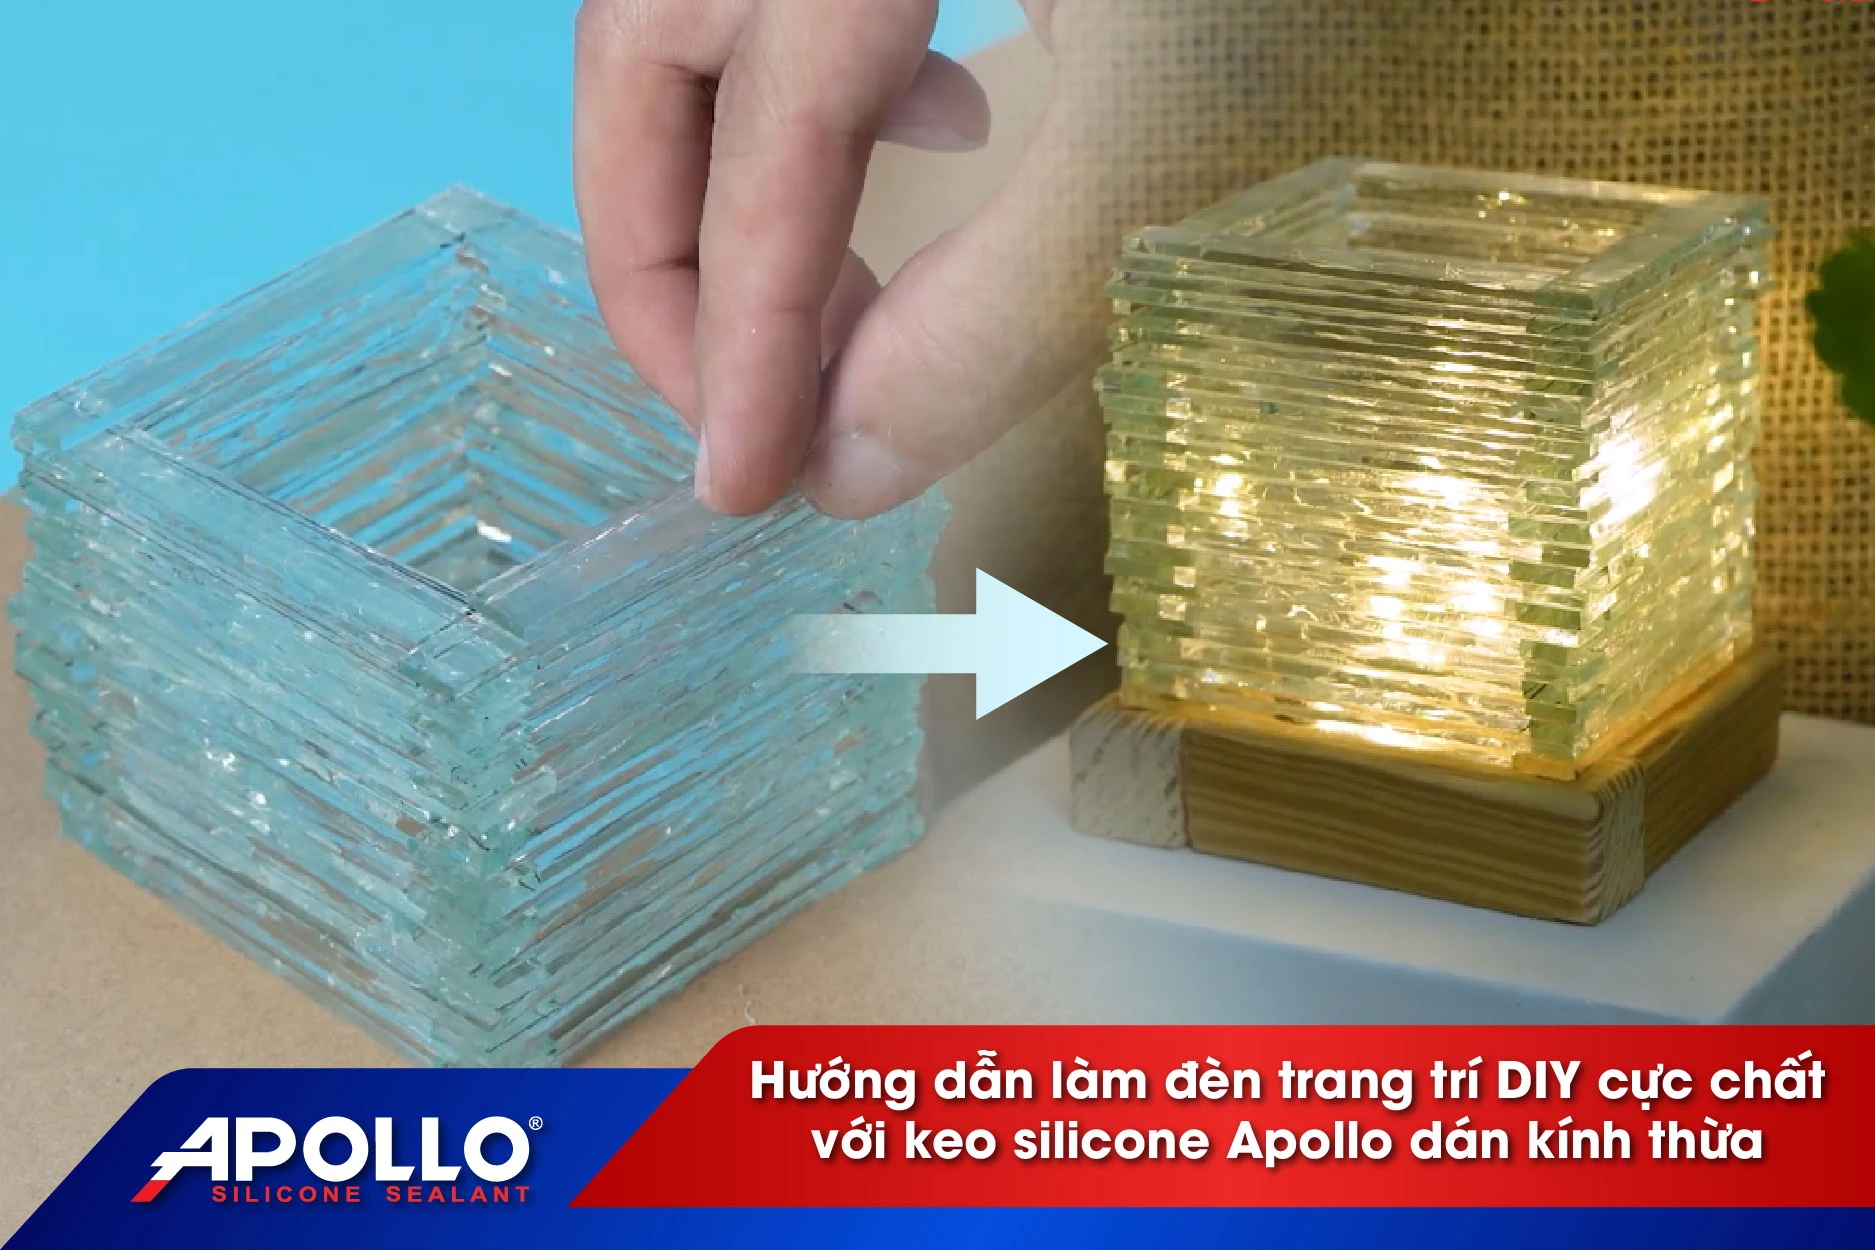 Hướng dẫn làm đèn trang trí cực chất với keo Apollo Silicone dán kính